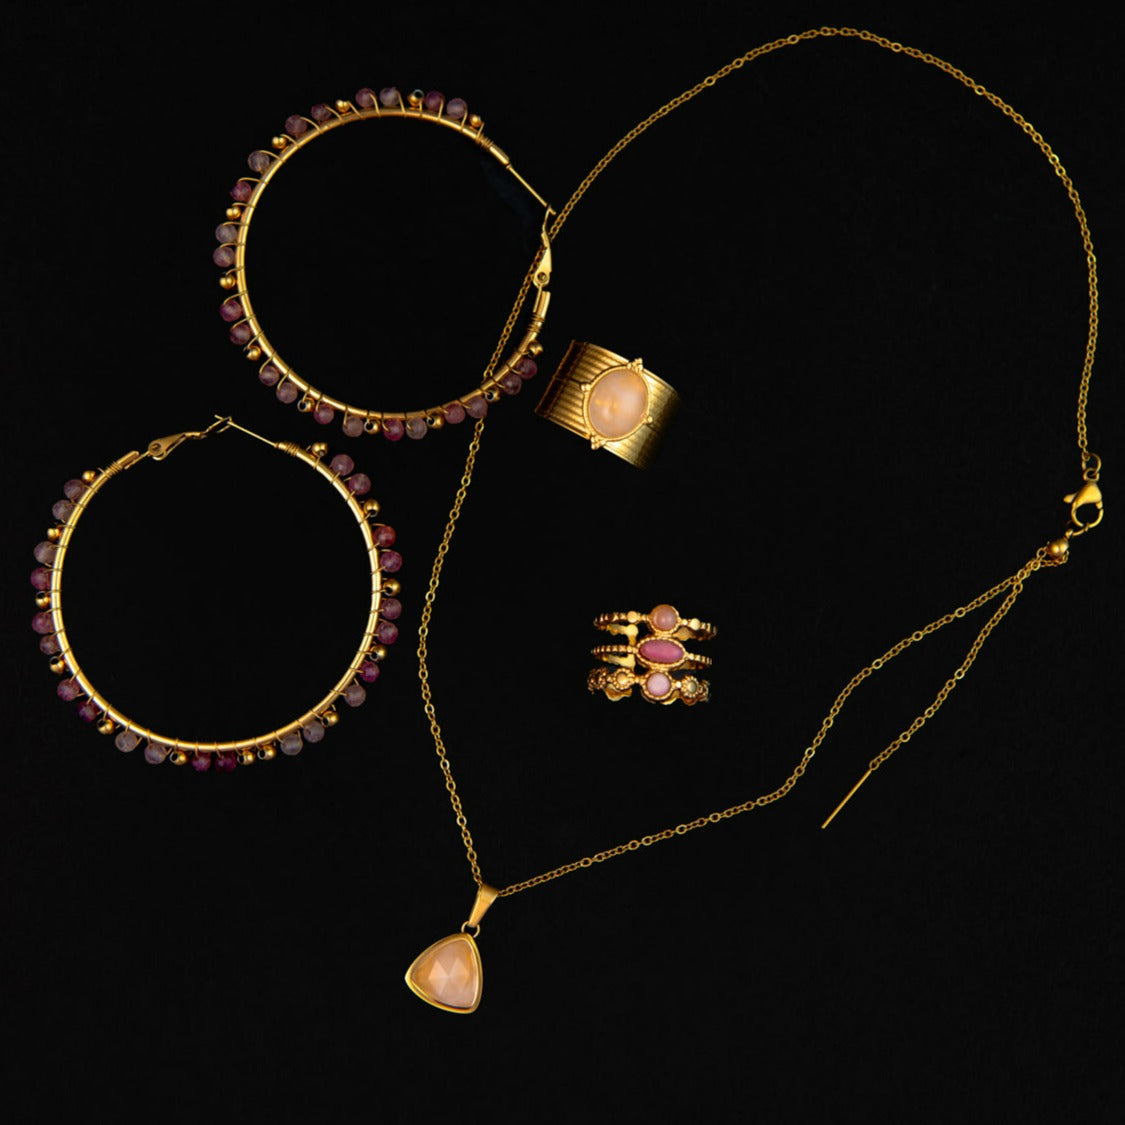 Sarro Necklace in Rose Quartz